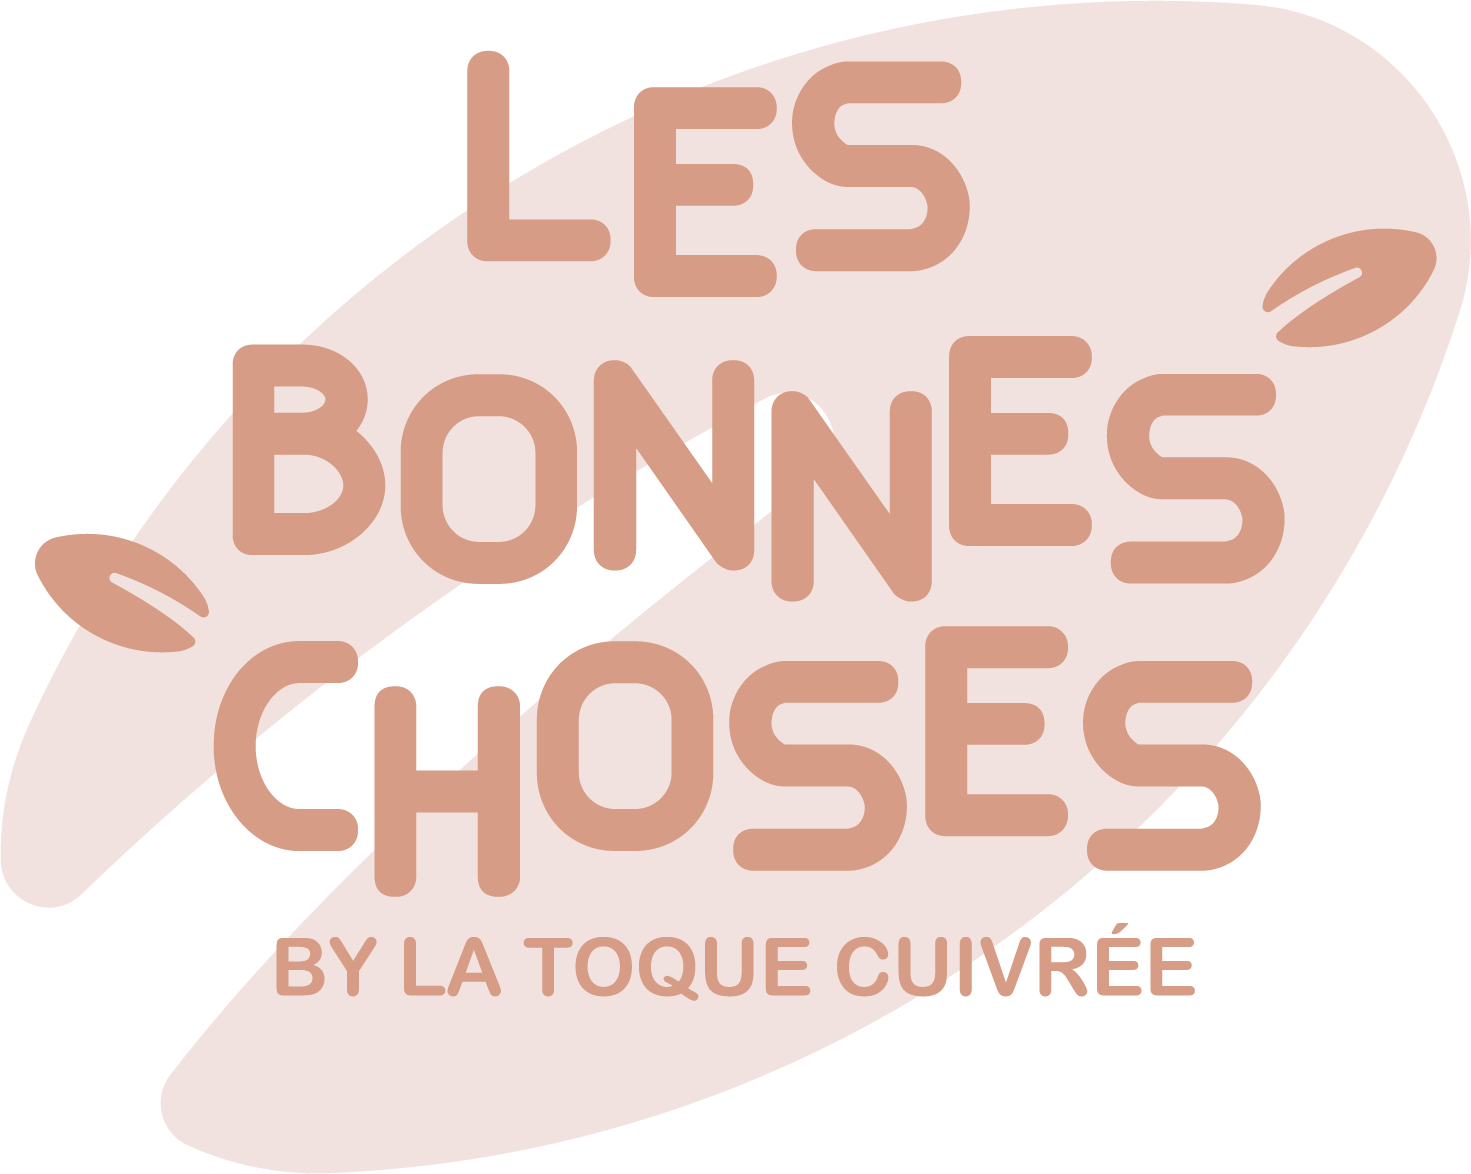 LES BONNES CHOSES BY LA TOQUE CUIVREE